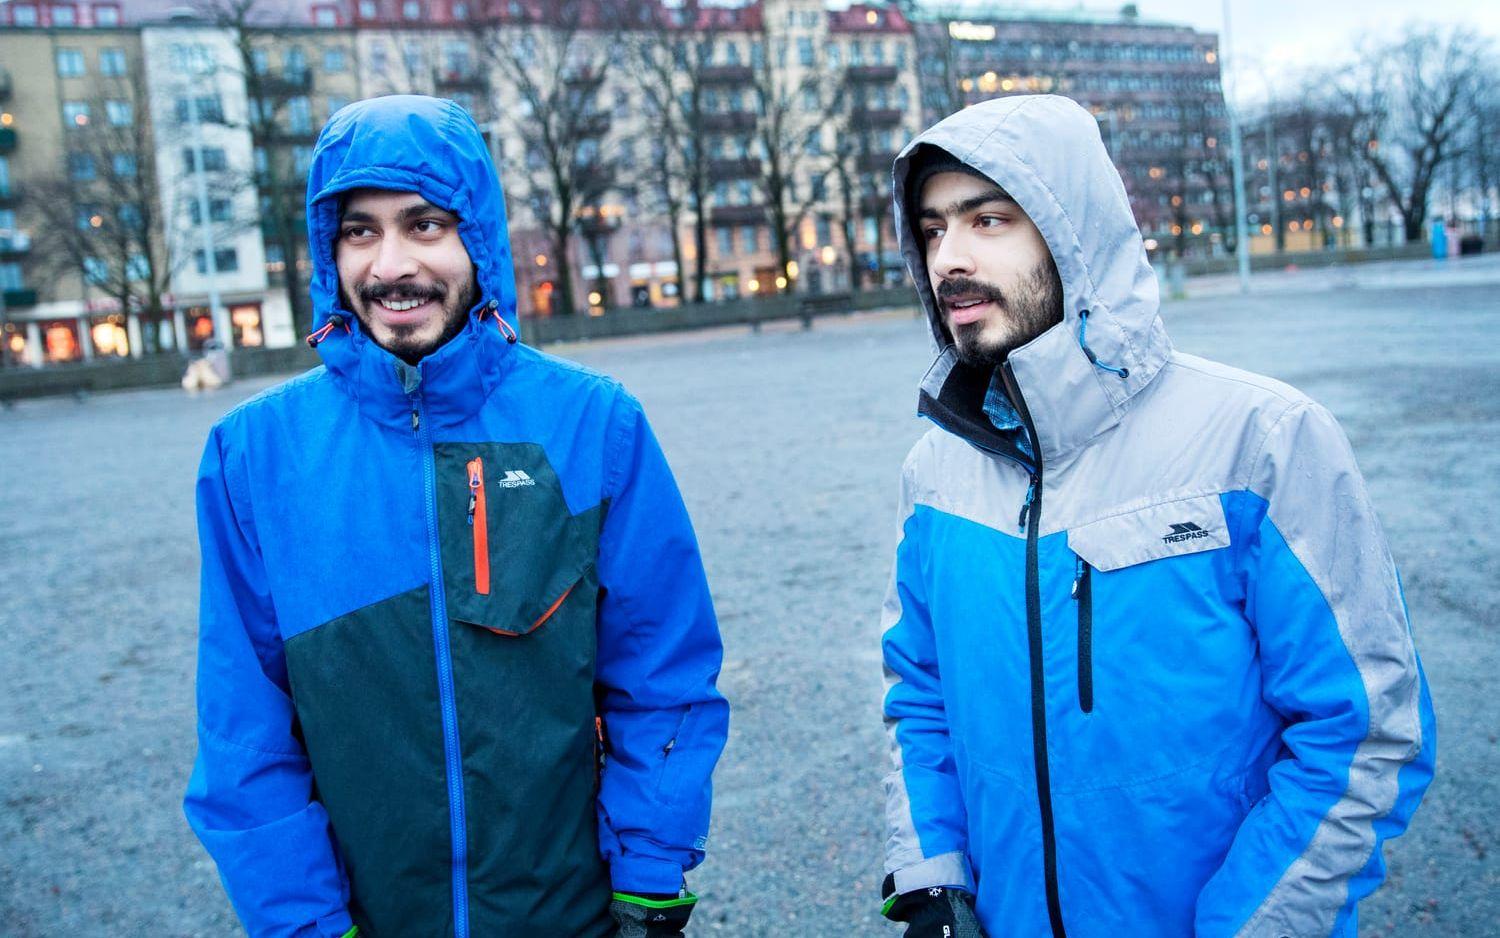 Utbytesstudenterna Saad och Saud Ahmad från Pakistan är med och städar i Göteborg för första gången. "Göteborg är mycket renare än Pakistan", säger Saud. 